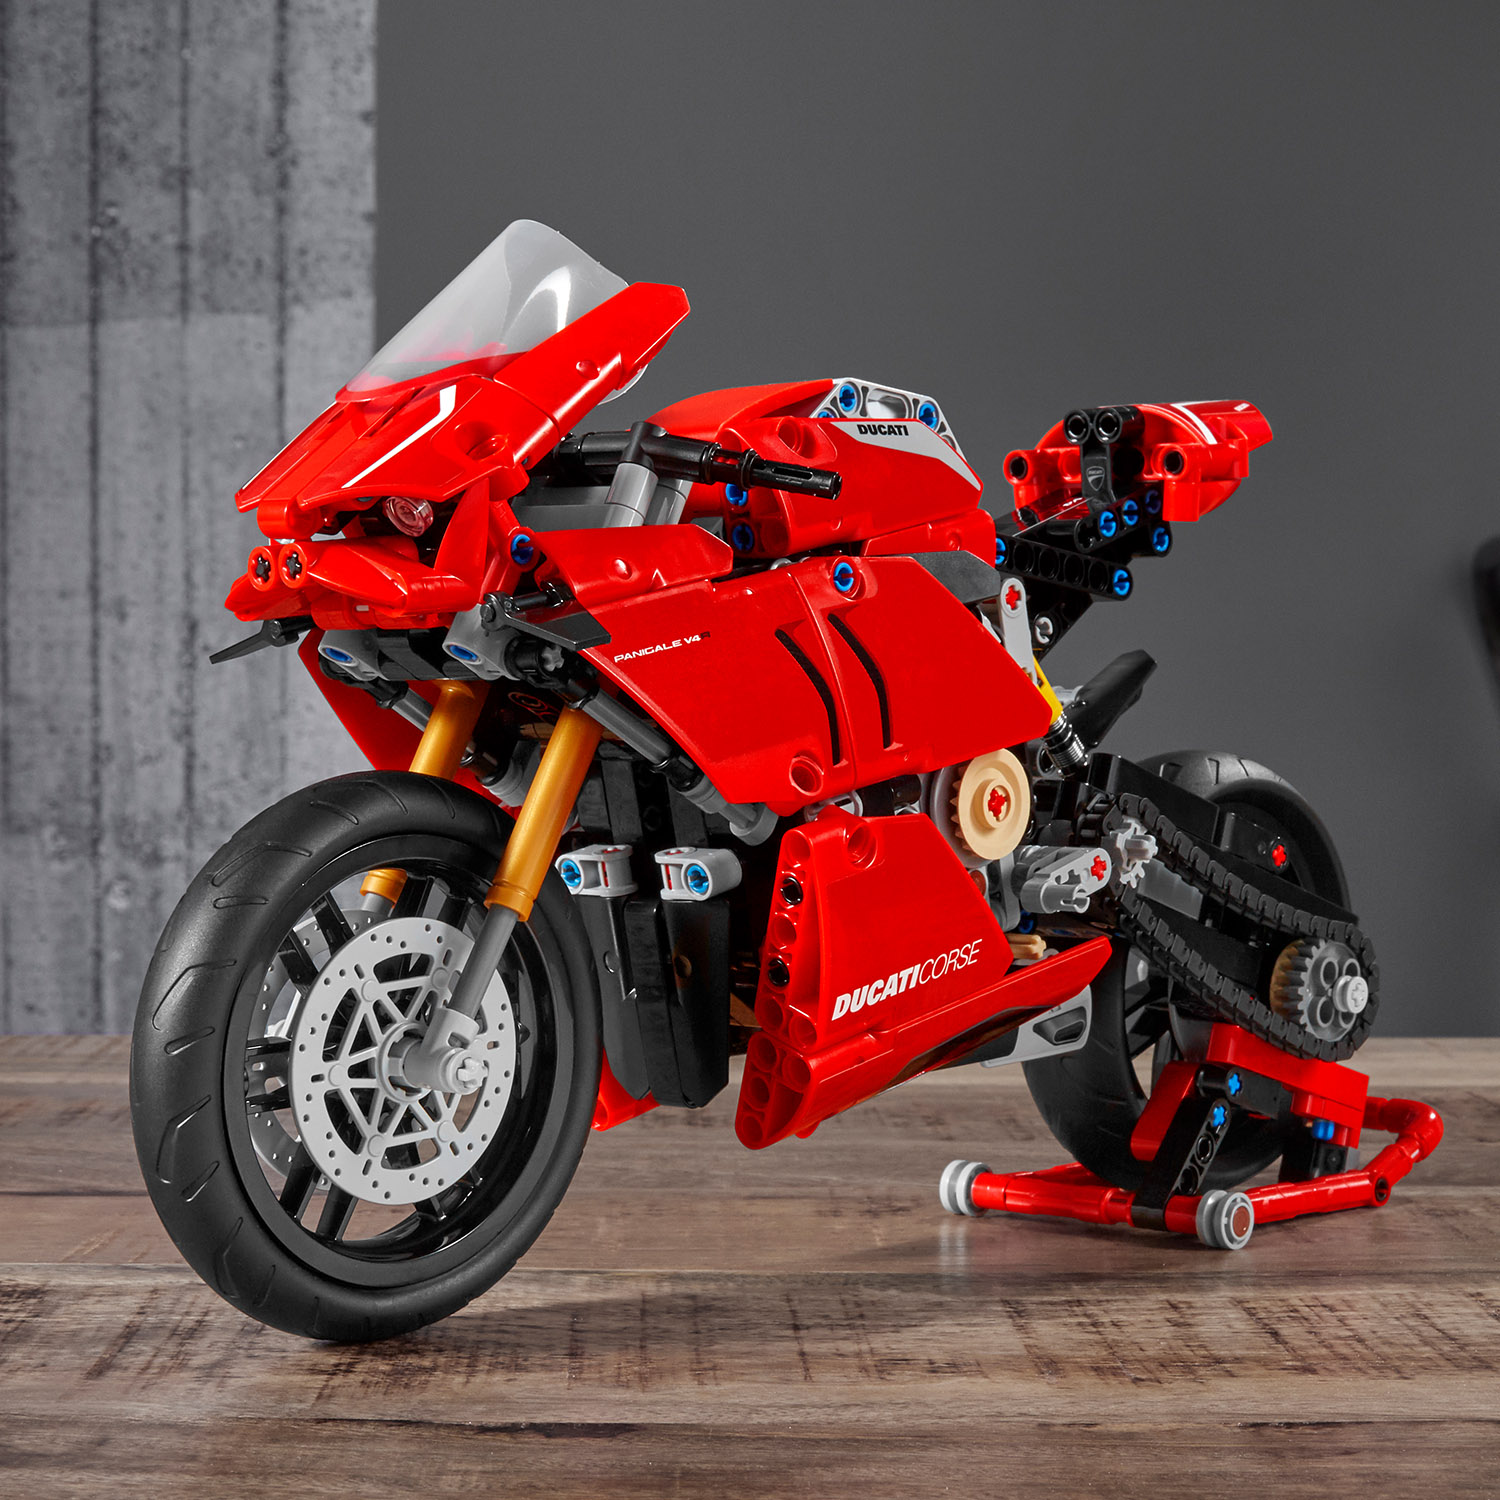 Виставковий стенд Ducati для демонстрації